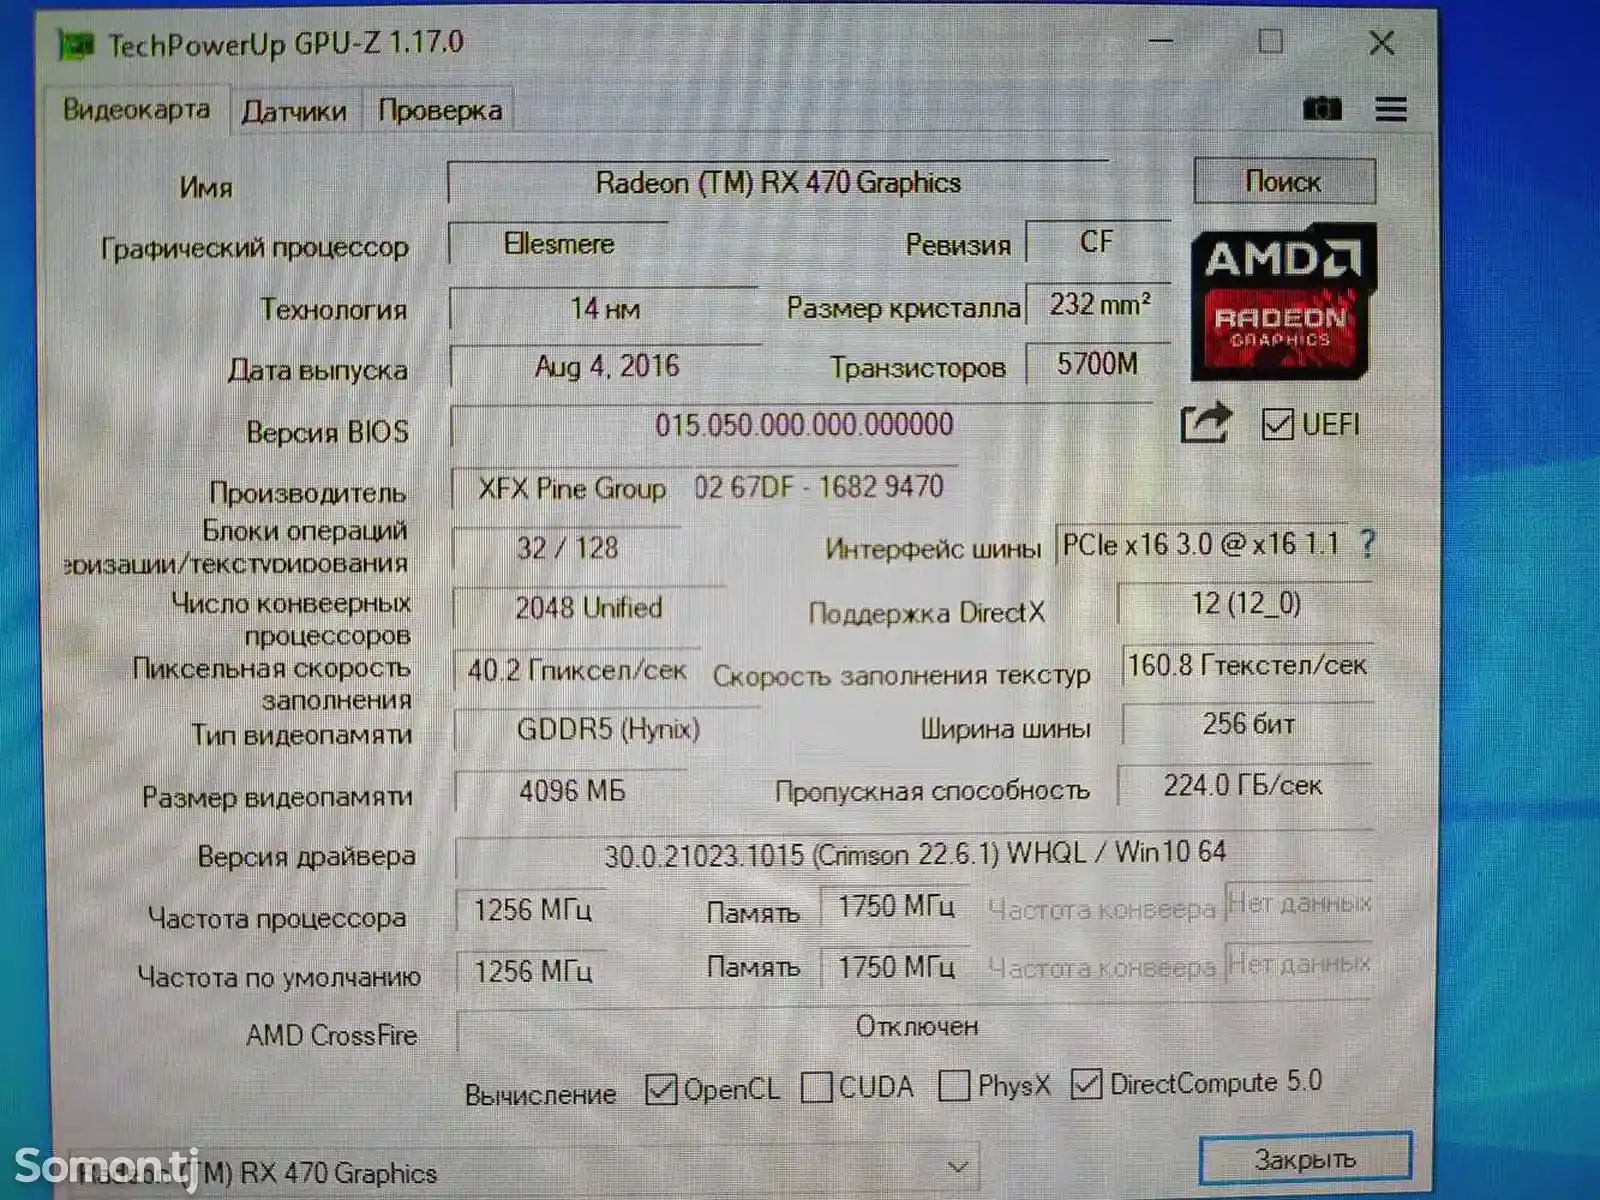 Персональный компьютер Core i5 4590 RX-470 4GB 256BIT 16GB 1TB-9